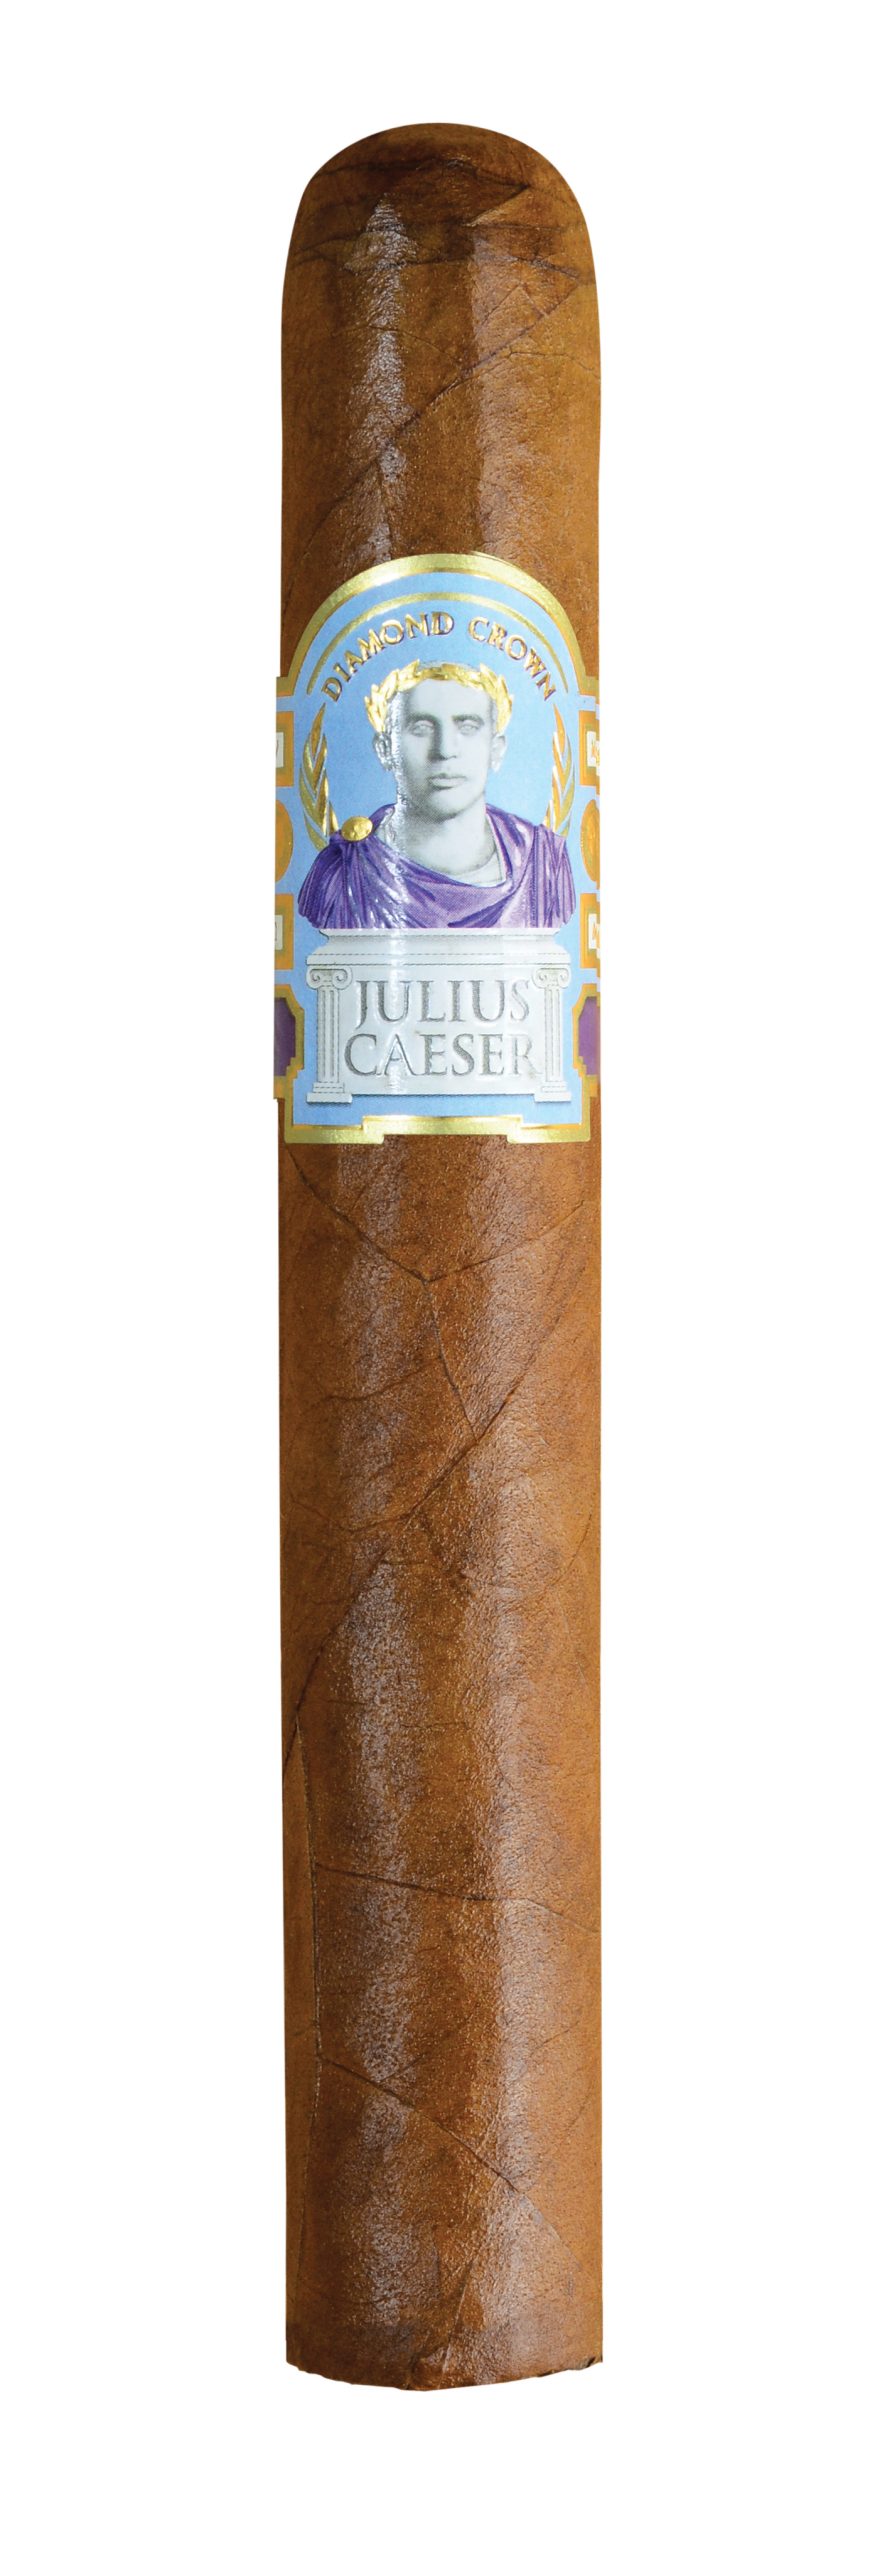 diamond crown julius caeser toro single cigar